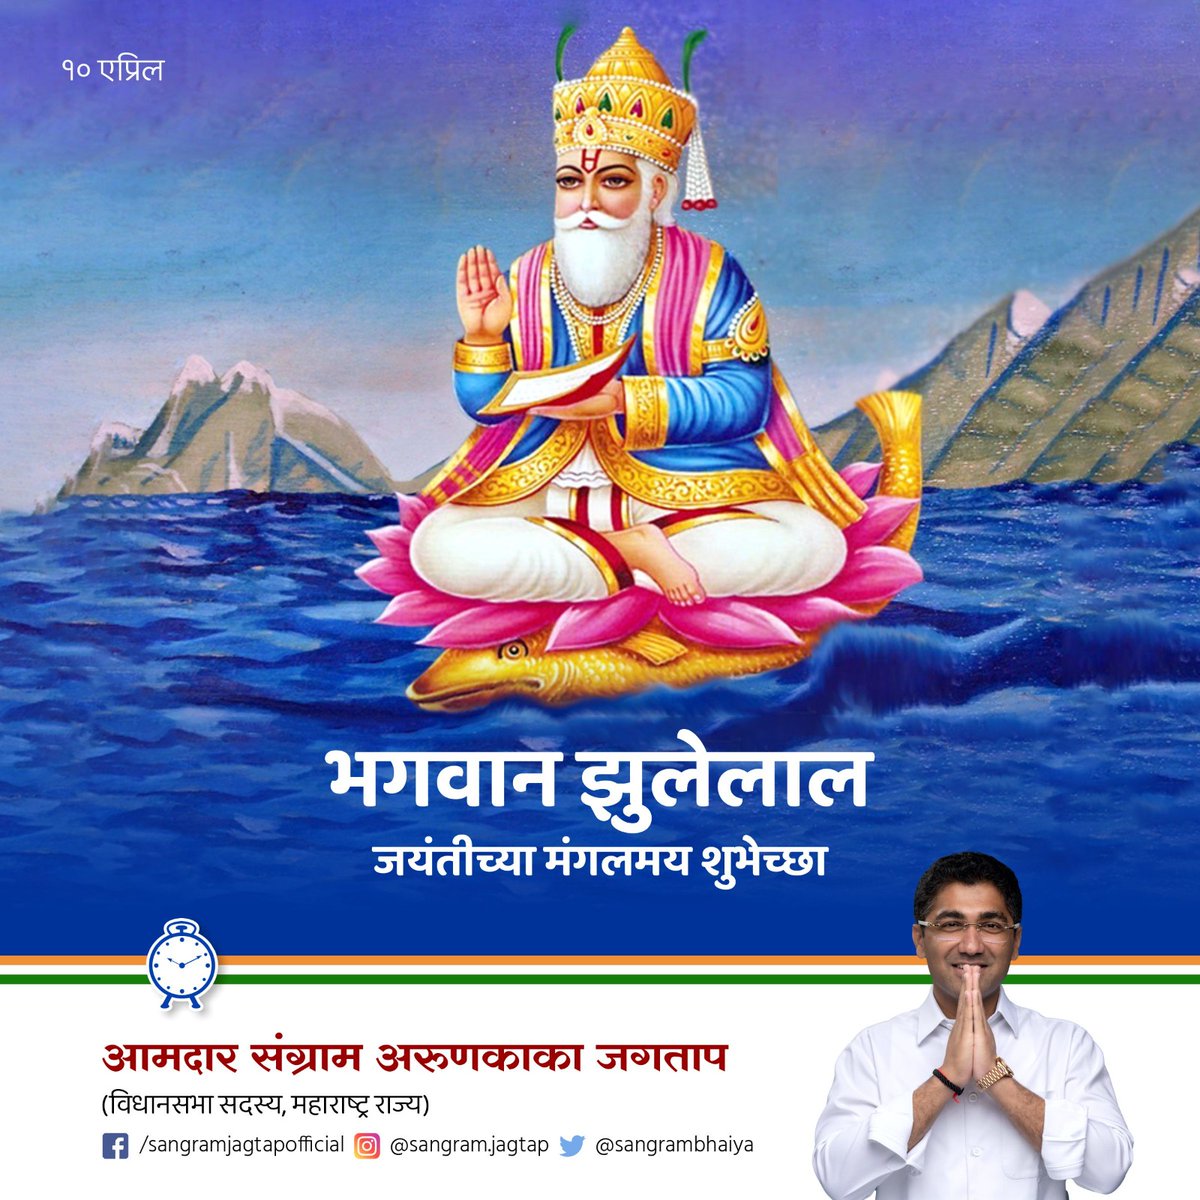 भगवान श्री झुलेलाल जयंतीच्या सर्वांना मंगलमय शुभेच्छा! #BhagwanJhulelal #Ahilyanagar #NCP #Rashtrawadi